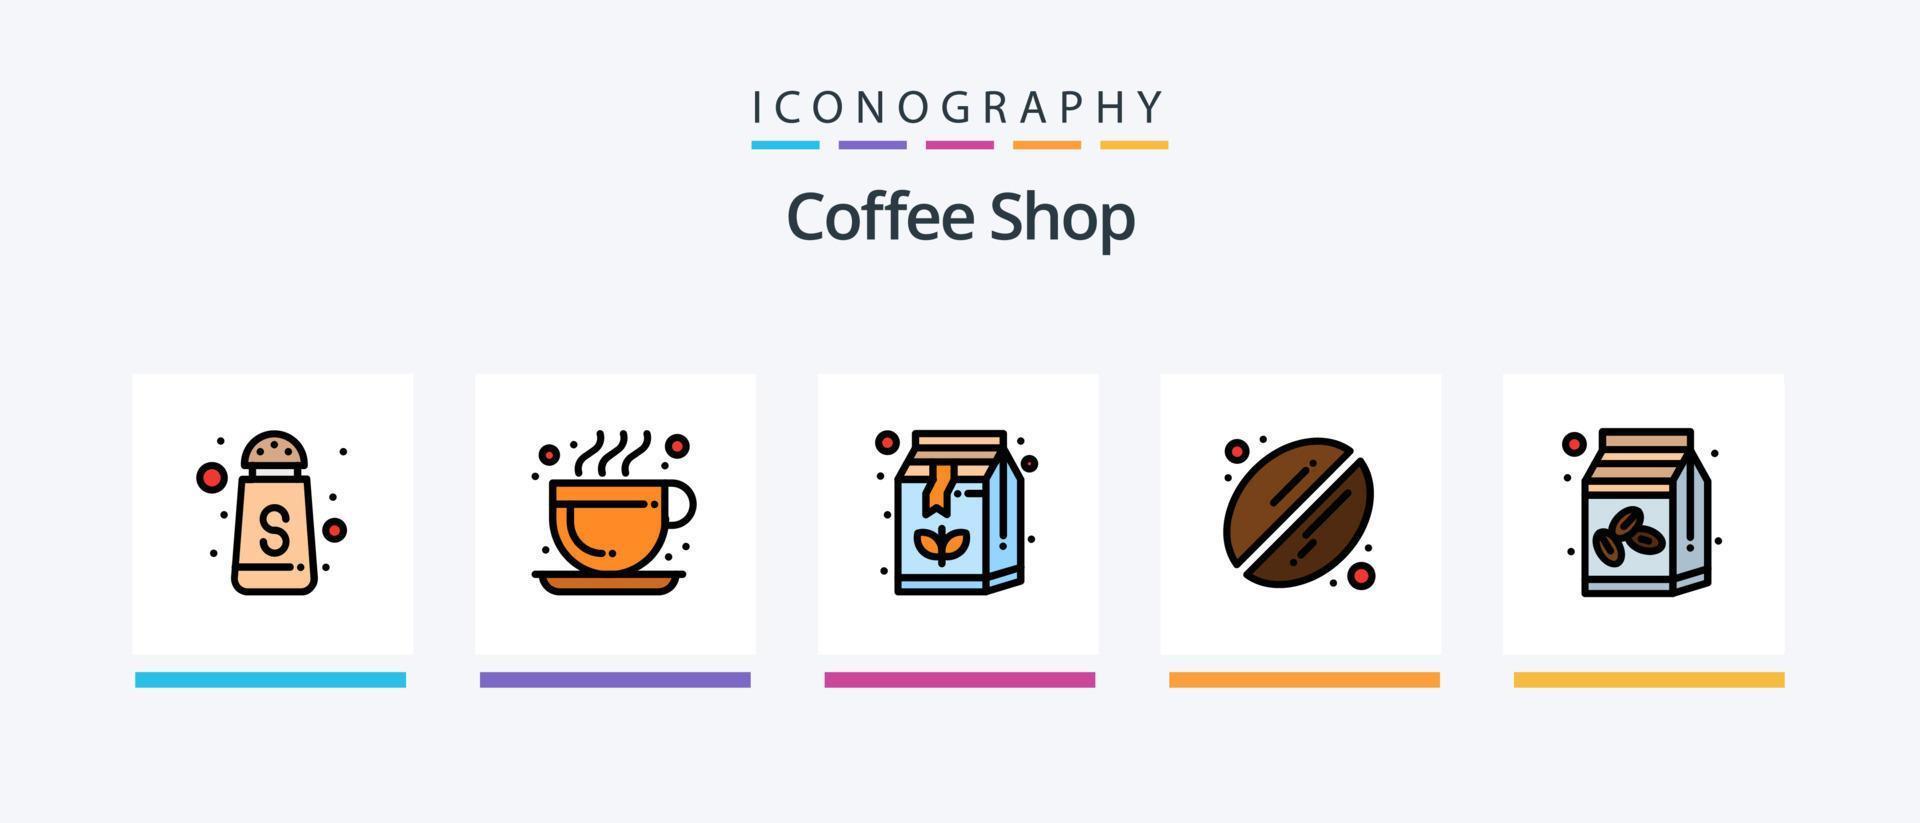 ligne de café remplie de 5 packs d'icônes, y compris la boutique. boire. machine. café. café chaud. conception d'icônes créatives vecteur